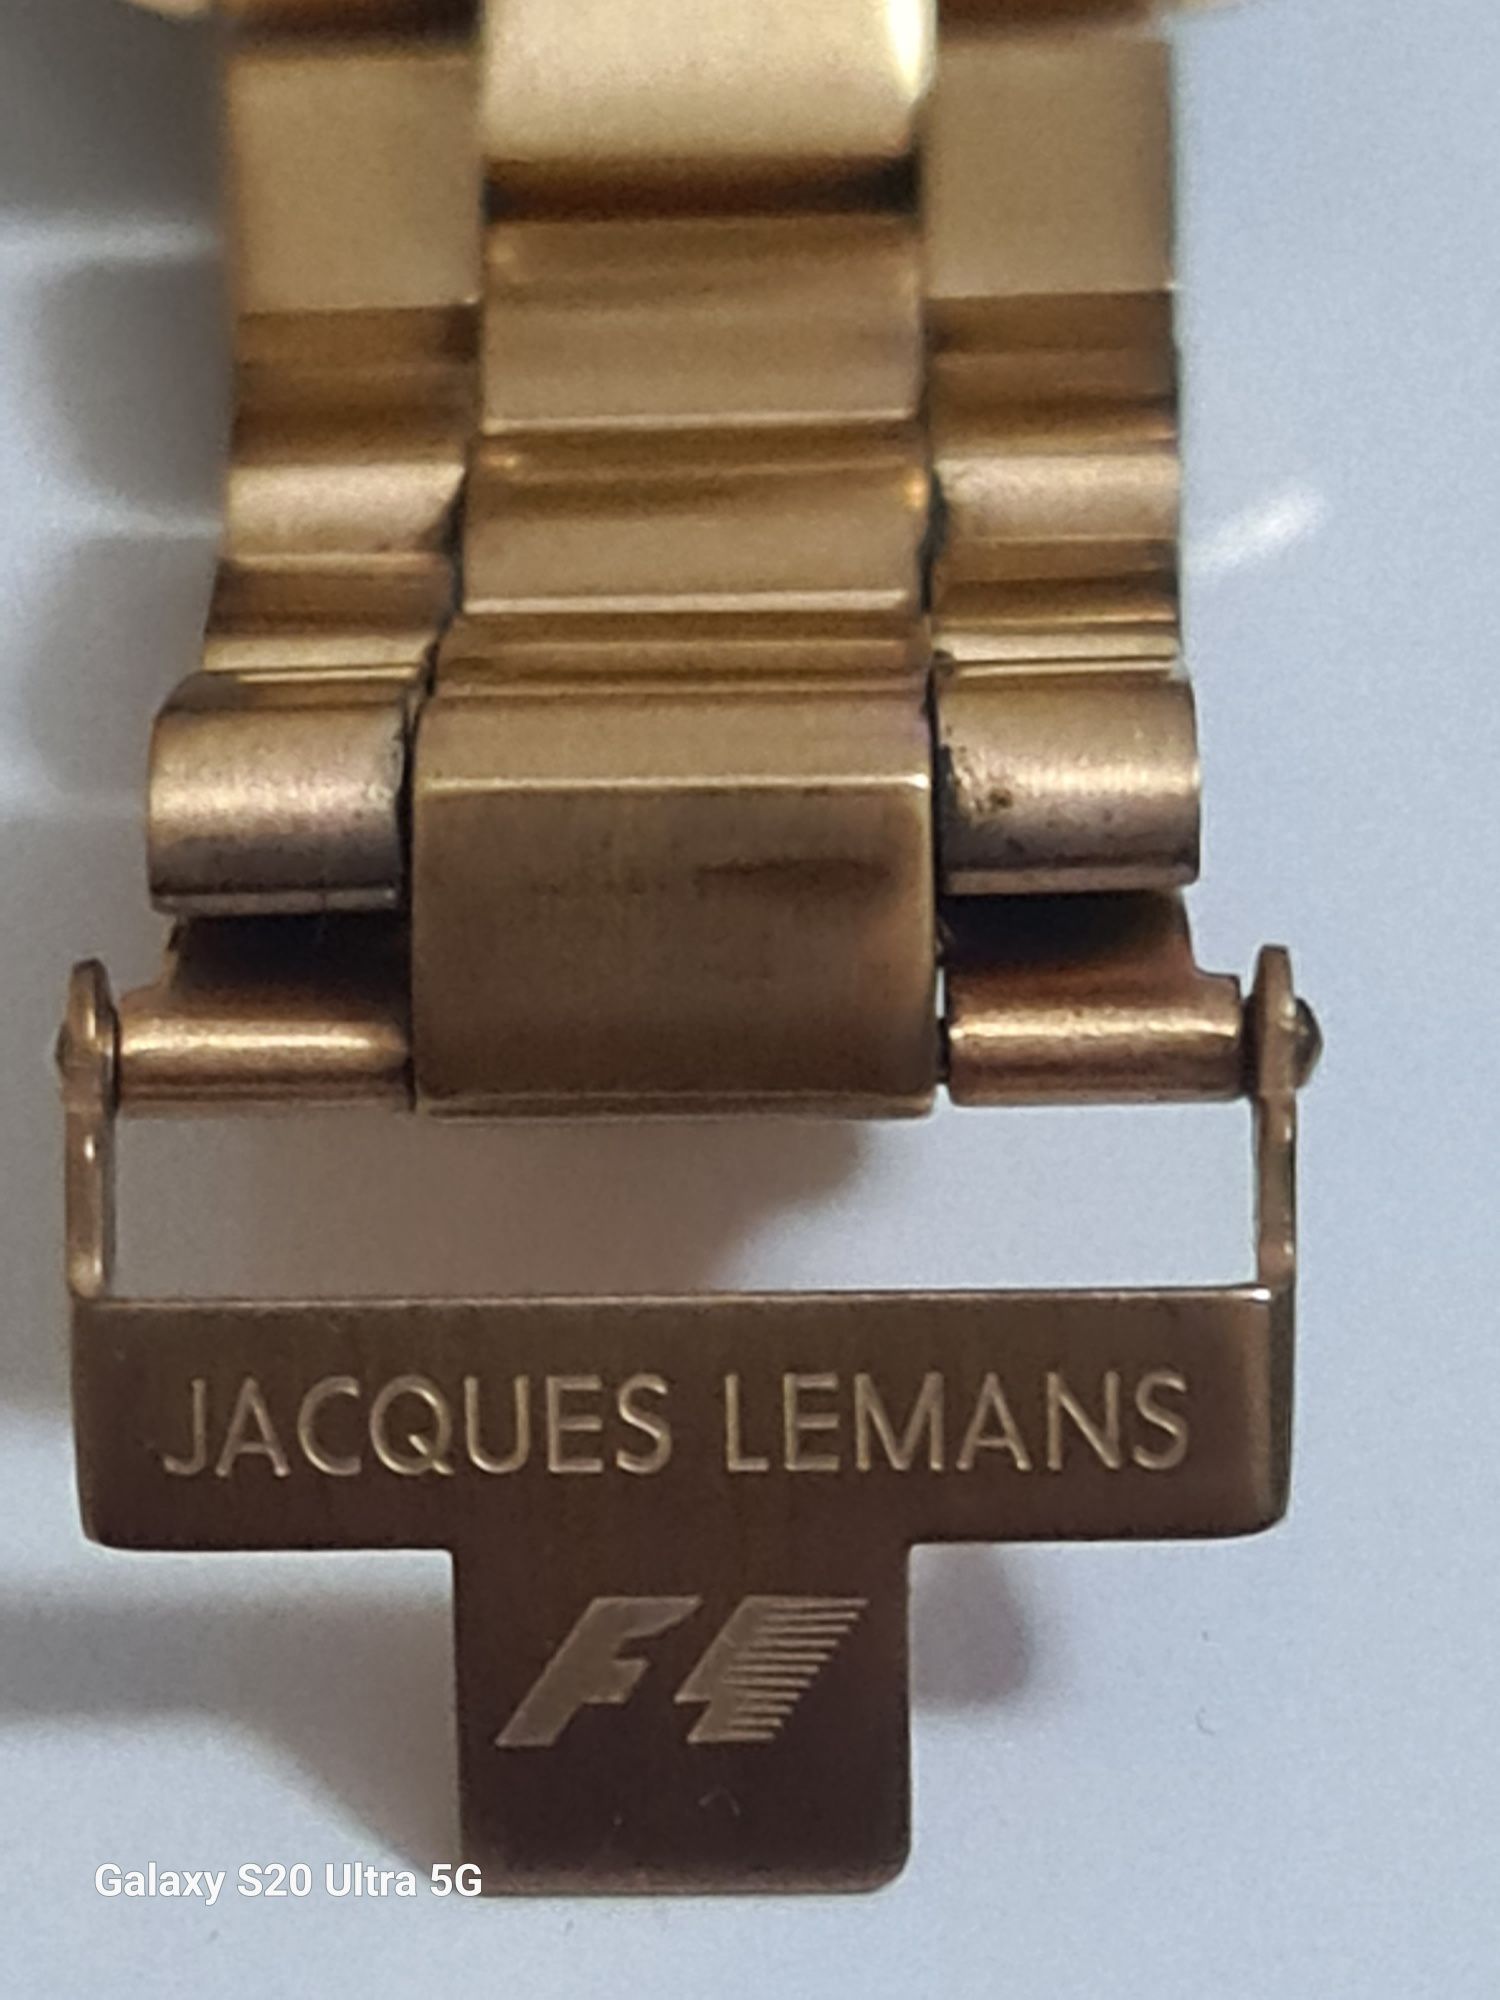 Relógio Jacques Lemans F1 (F5015) "LÊR DESCRIÇÃO"